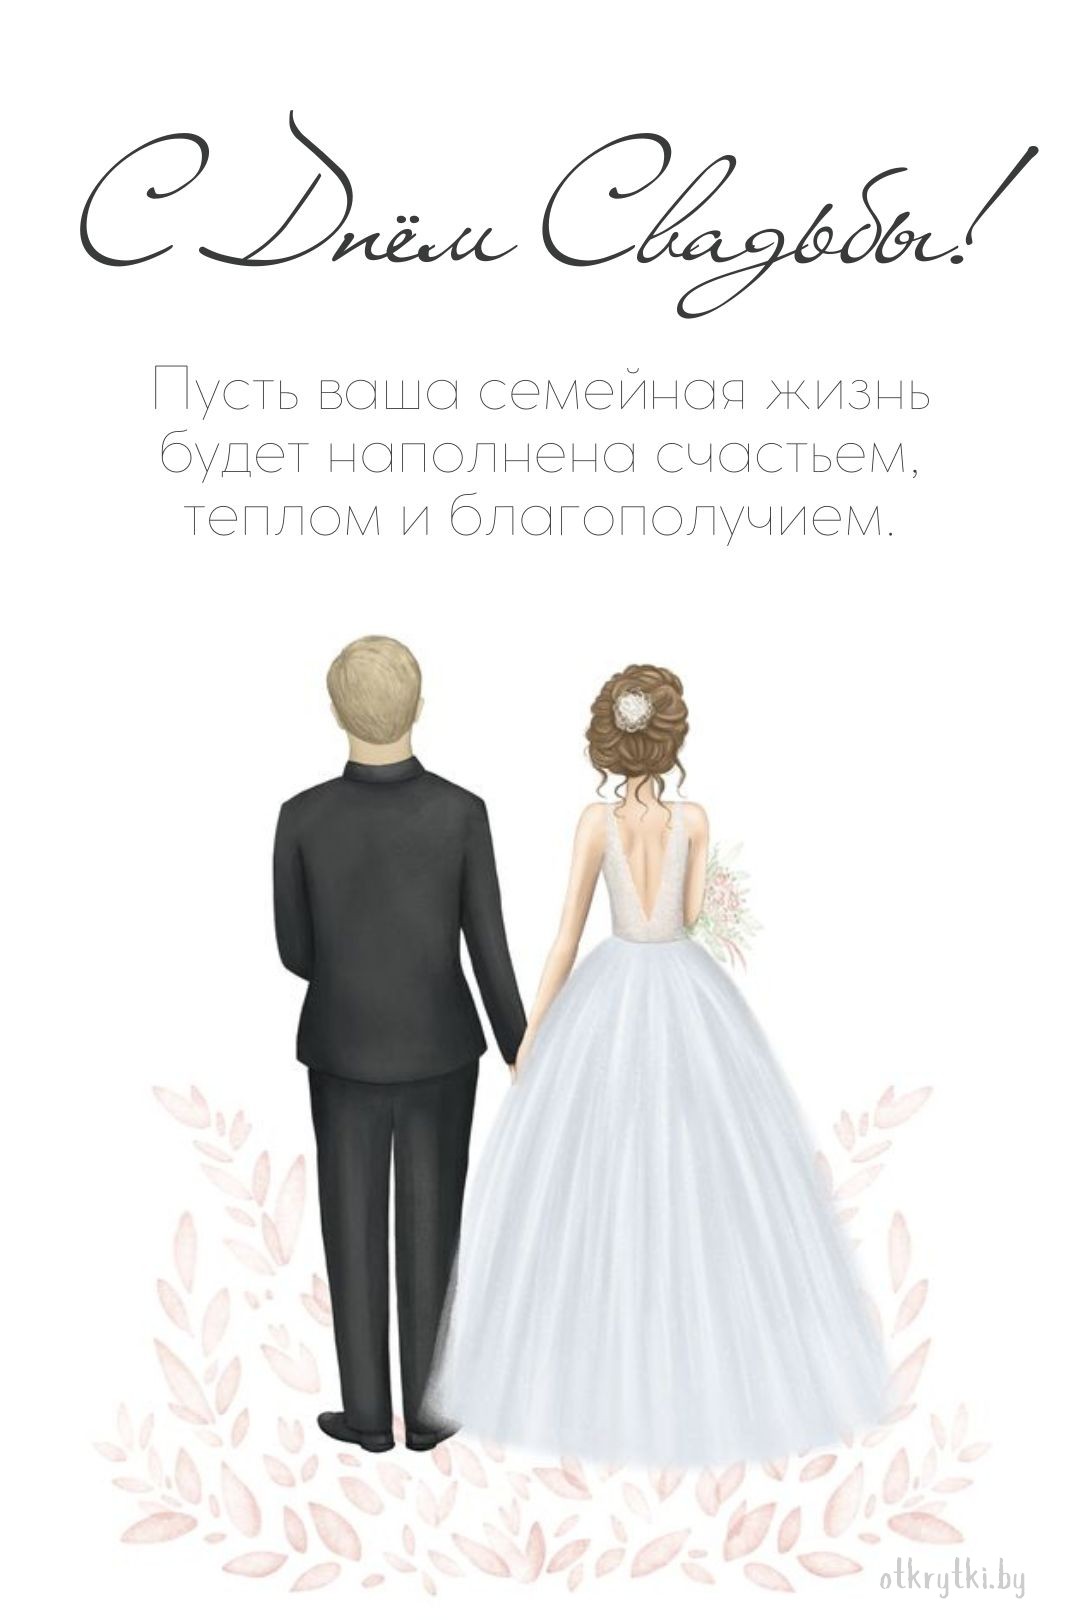 Бесплатная открытка с днем свадьбы с поздравлением